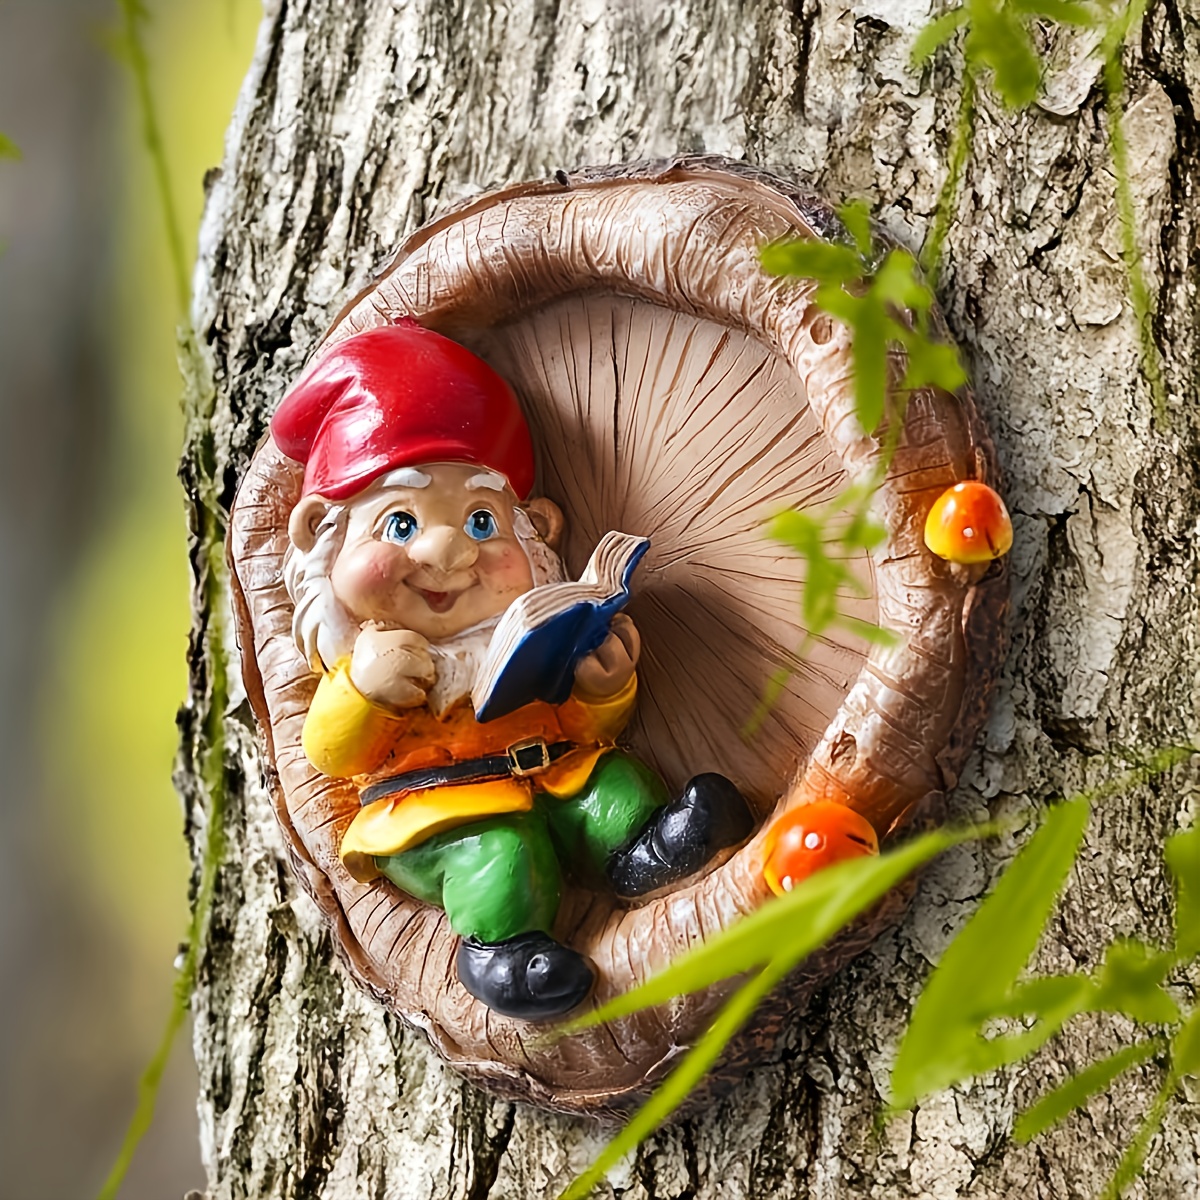 

Gnome Garden Sculpture: Resin Outdoor Decor For Your Lawn Or Patio